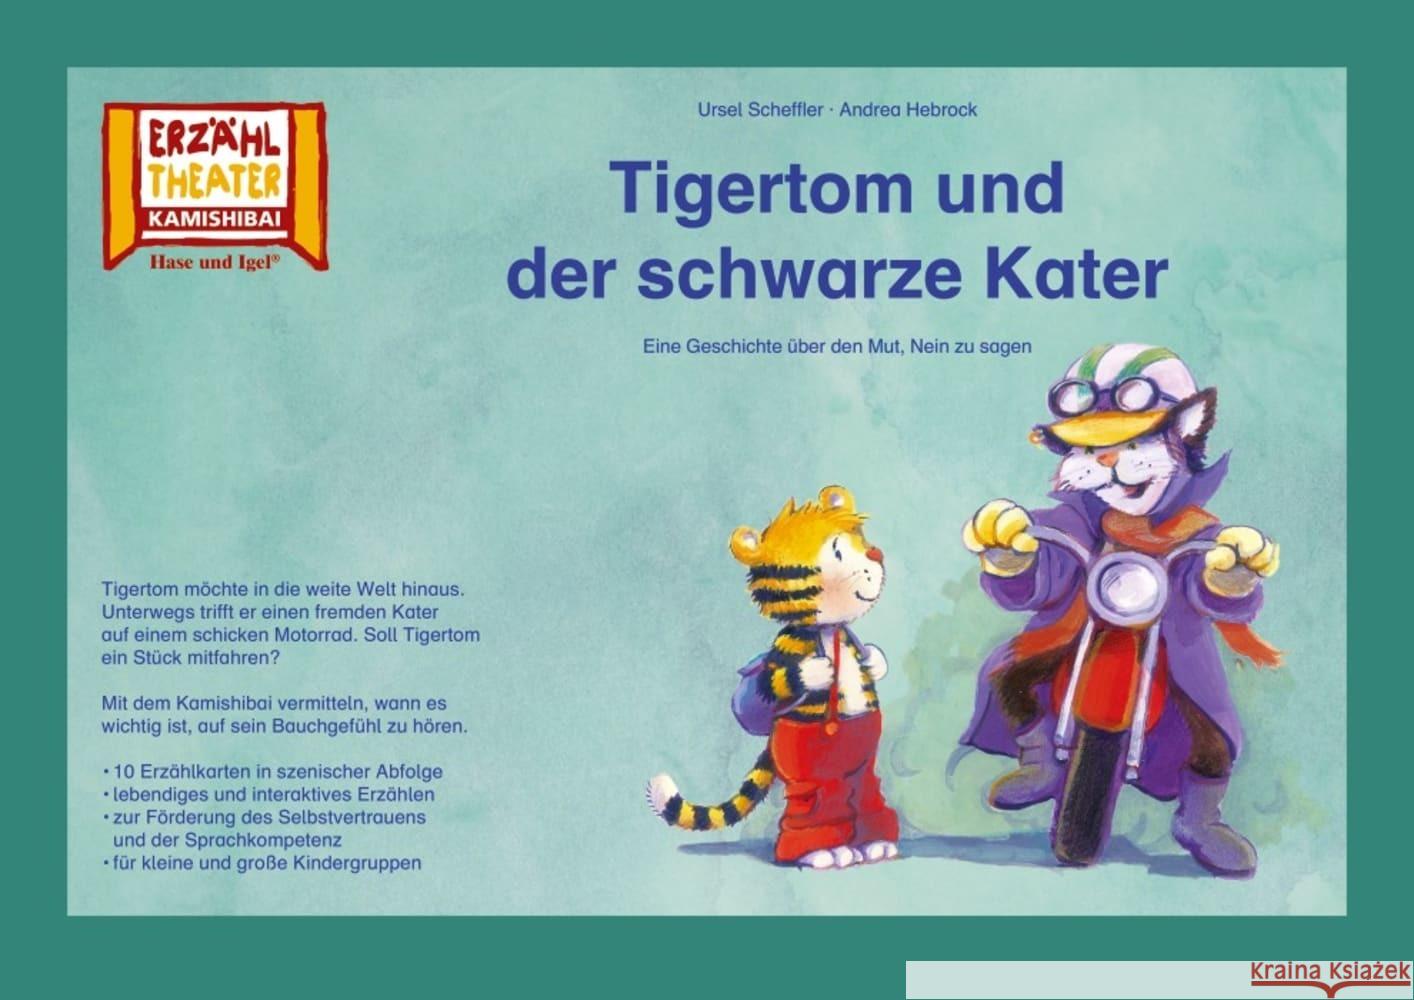 Kamishibai: Tigertom und der schwarze Kater : 10 Bildkarten für das Erzähltheater Scheffler, Ursel 4260505831424 Hase und Igel - książka